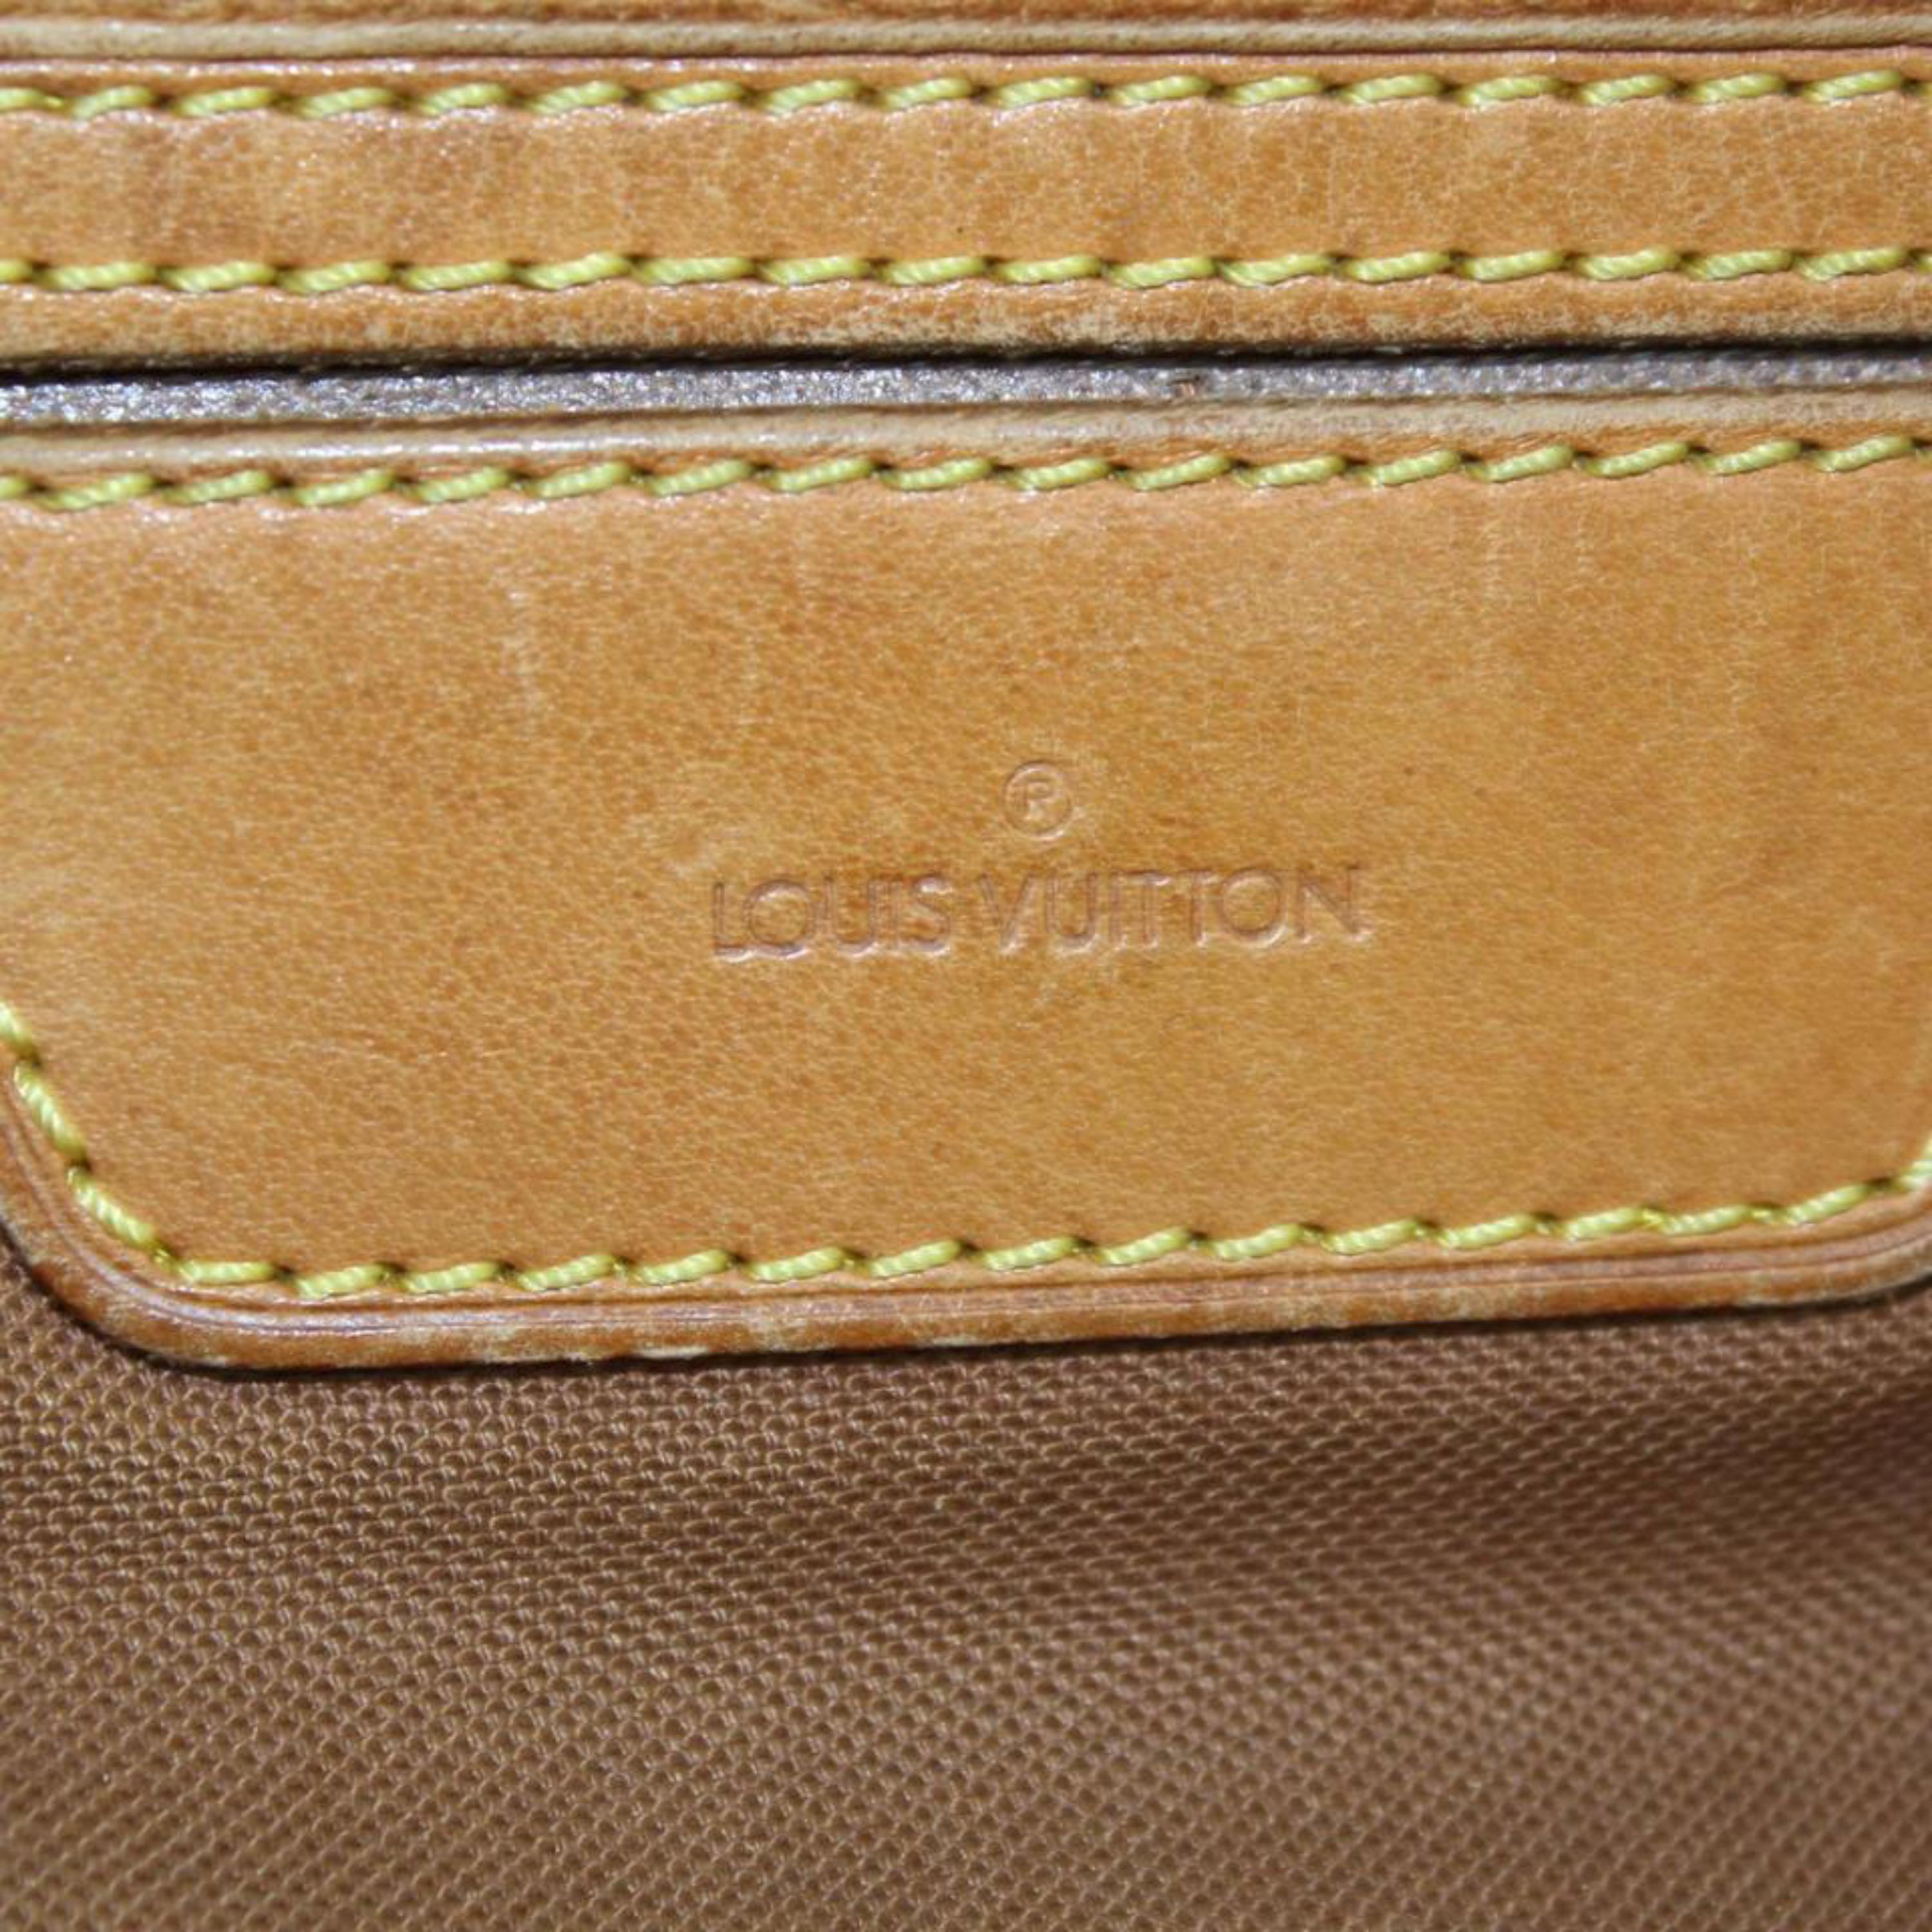 Women's Louis Vuitton Xl Monogram Sac Promenade 866720 Brown Coated Canvas Shoulder Bag For Sale